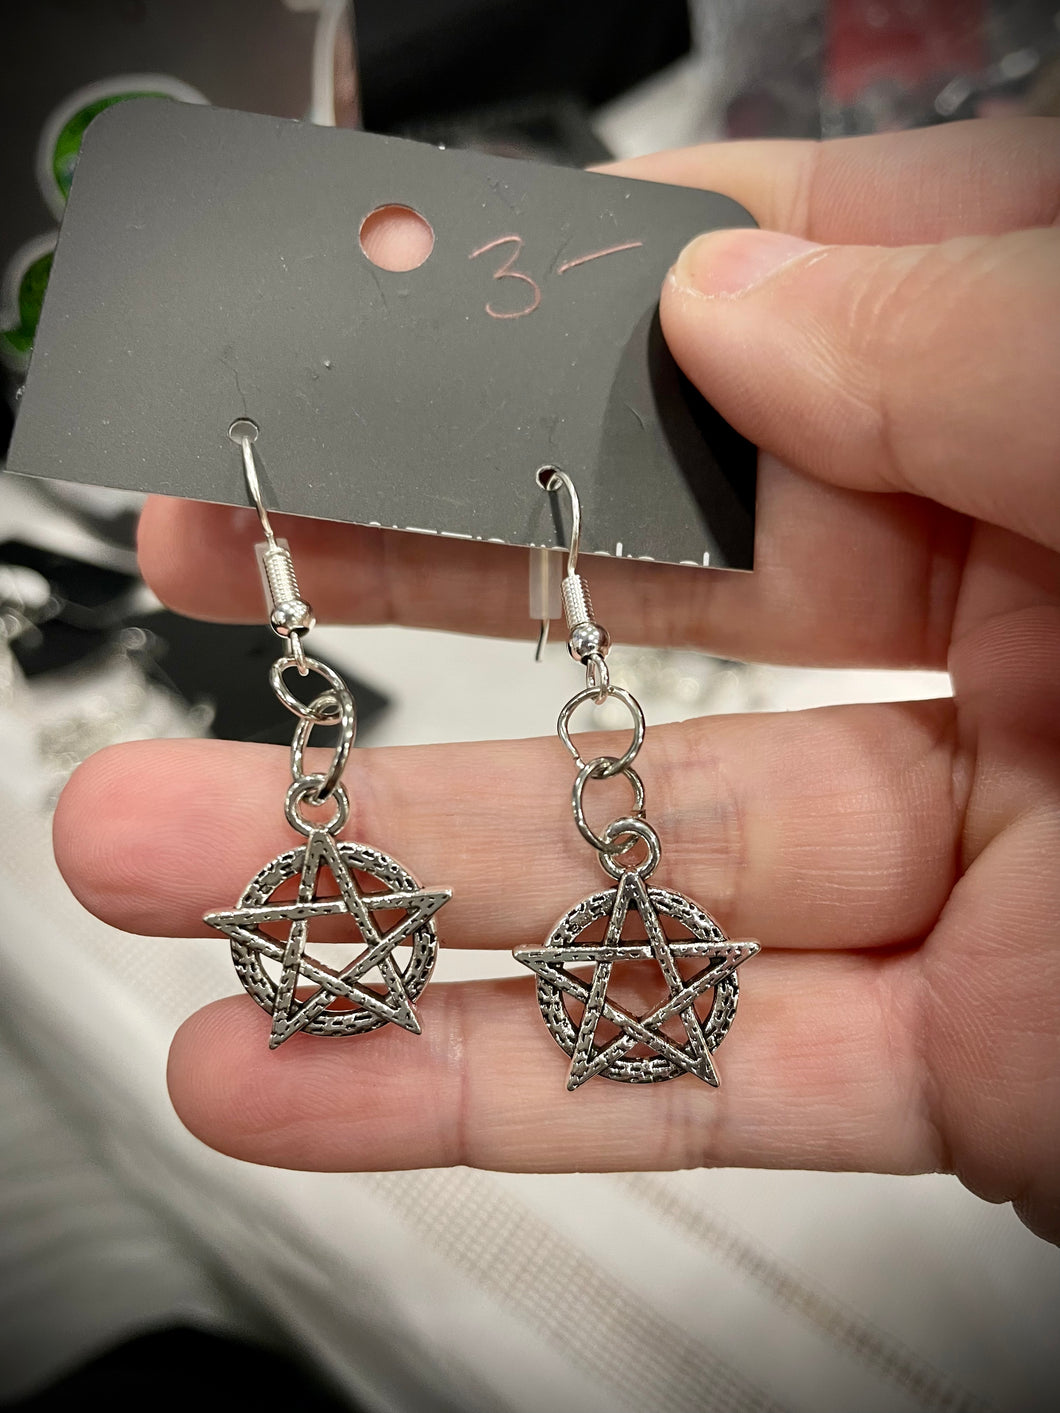 Silver pentacle earrings